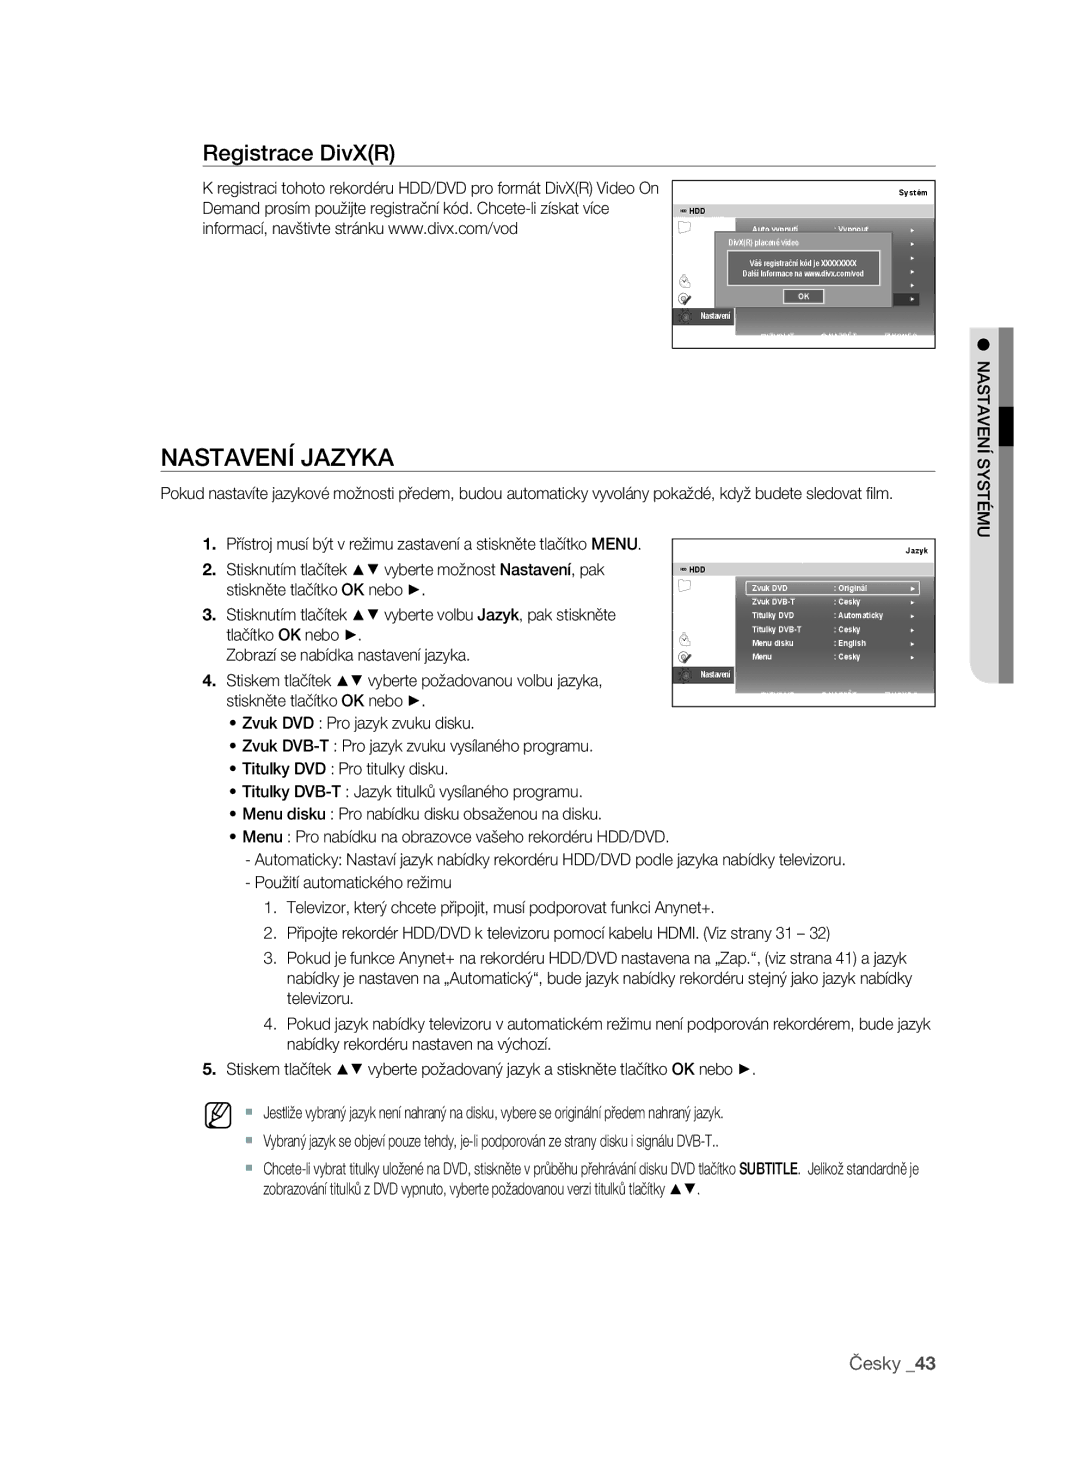 Samsung DVD-SH897/EDC Nastavení Jazyka, Registrace DivXR, Zobrazí se nabídka nastavení jazyka, Stiskněte tlačítko OK nebo 